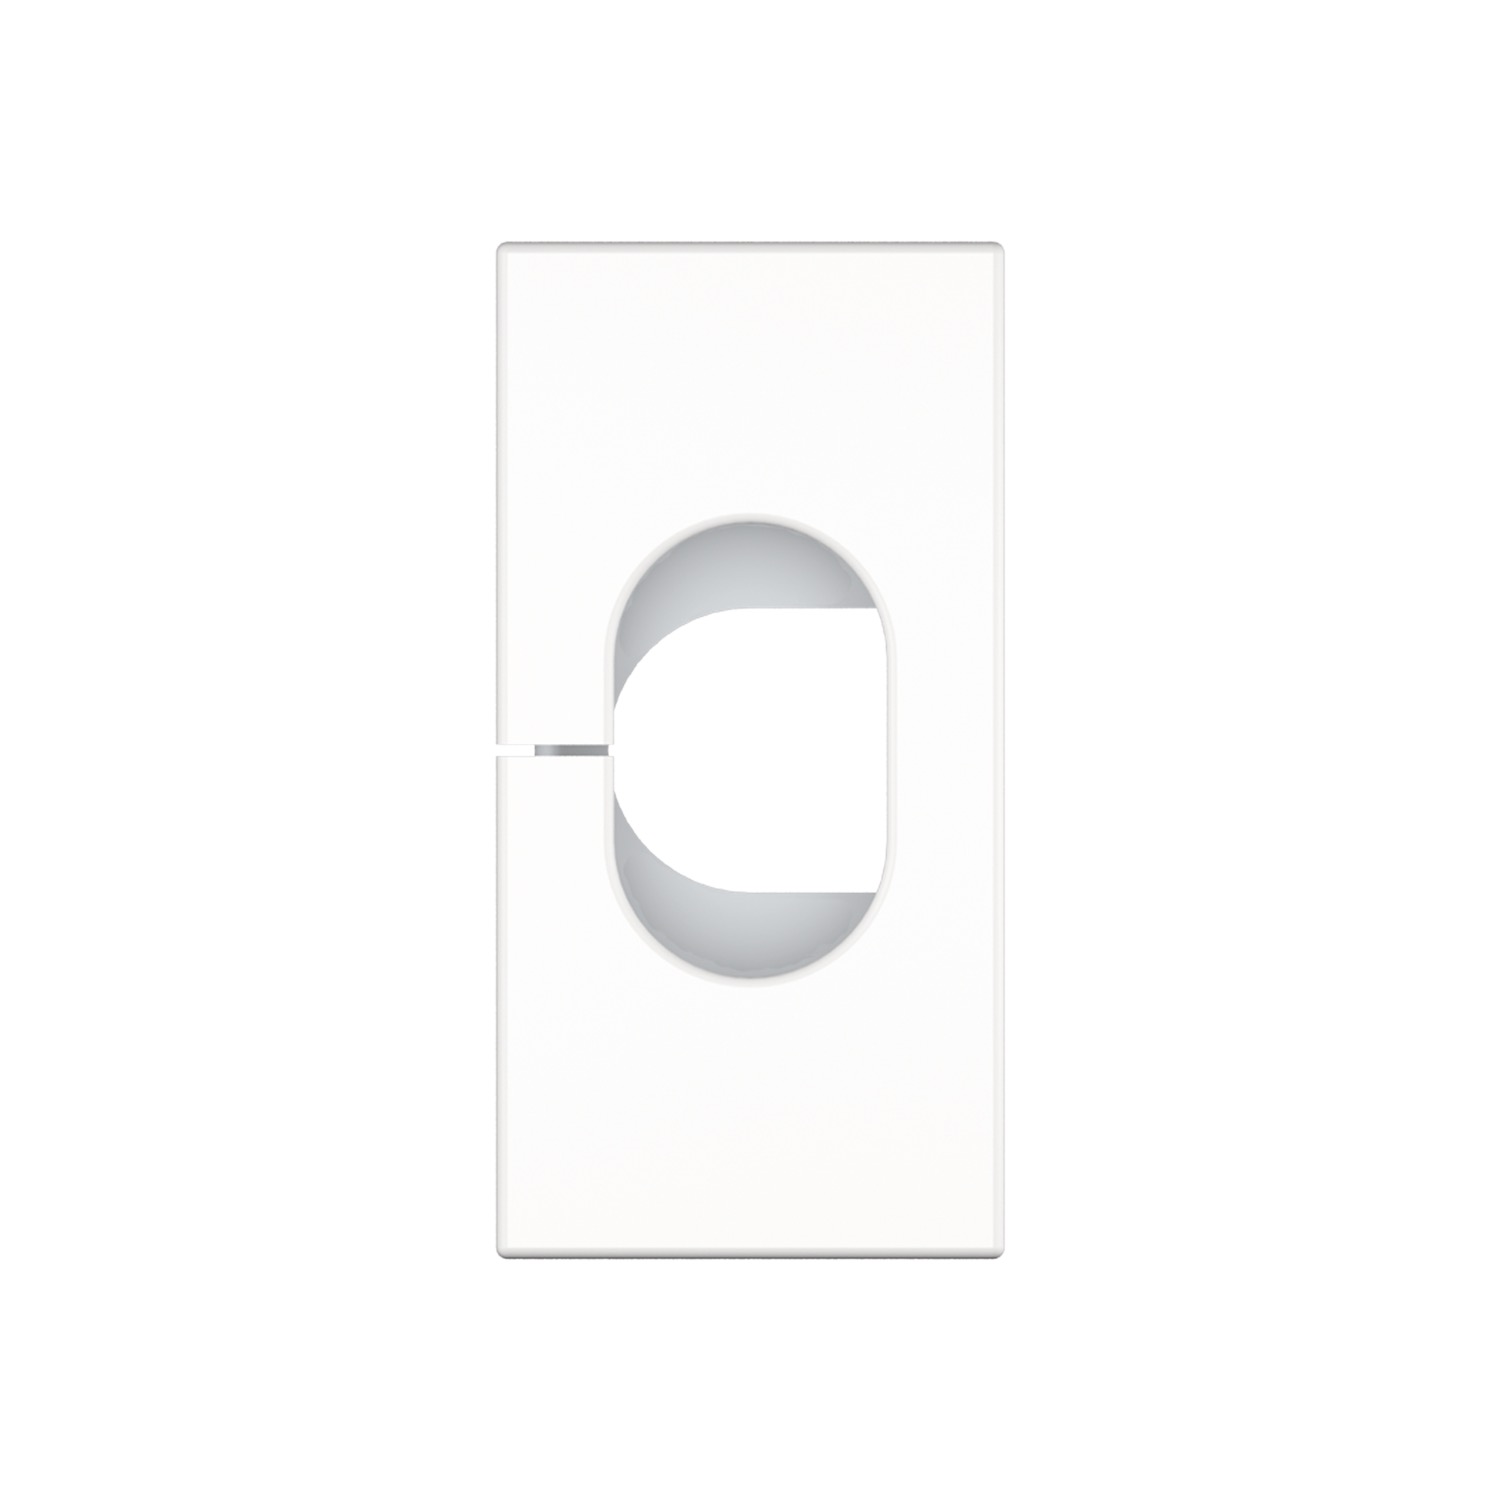 Kindermann Konnect flex 45 click Kabelauslass - Kabeldurchlass 12 mm - Vollblende - Weiß